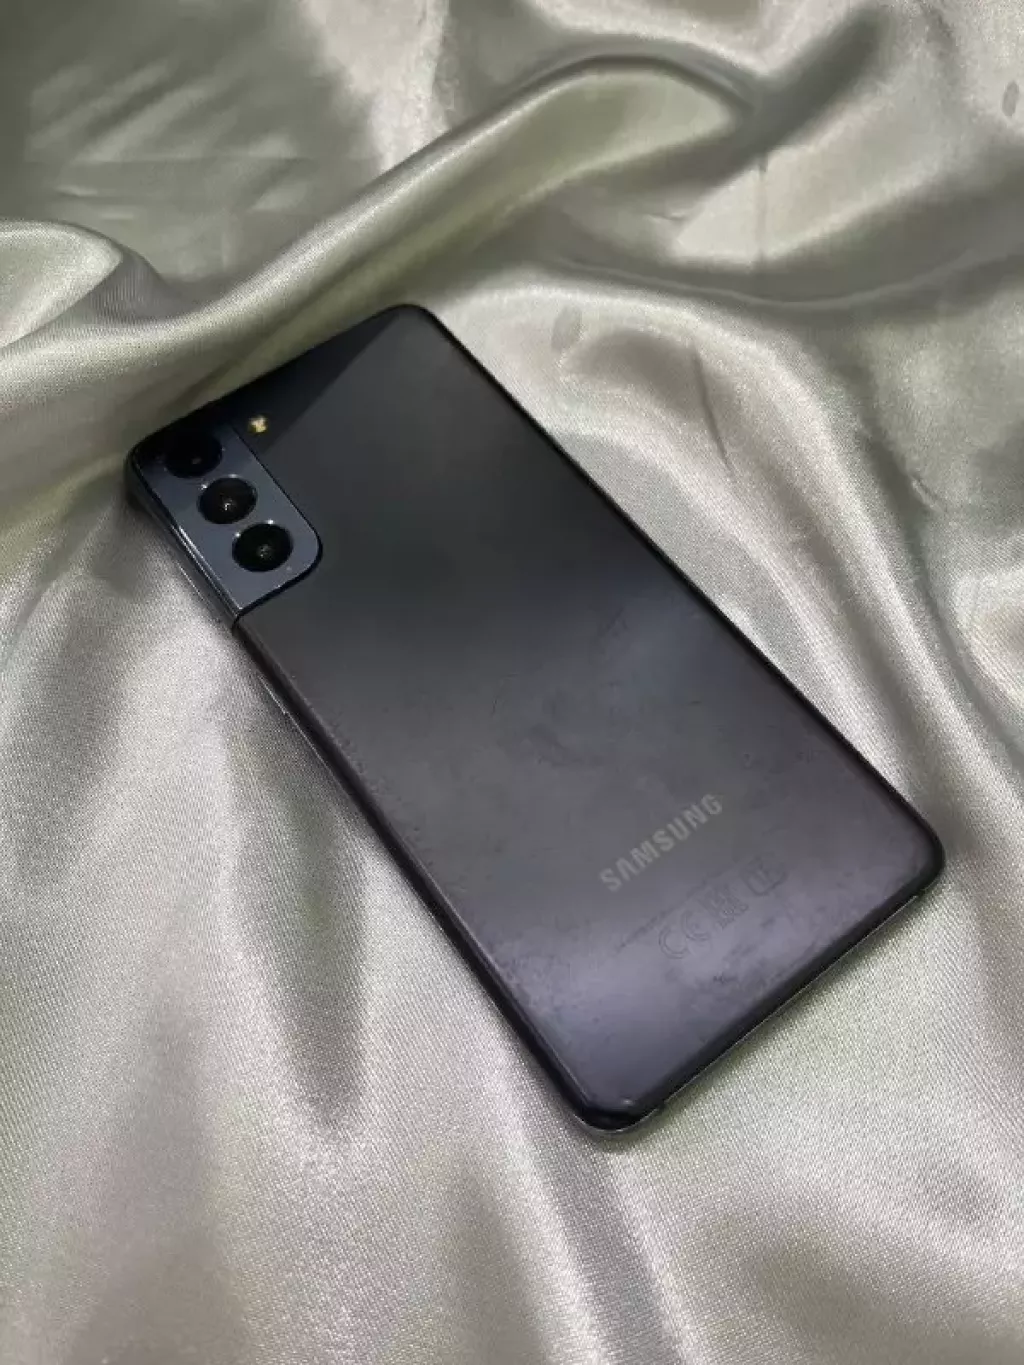 Купить б/у Samsung Galaxy S21 5G-0